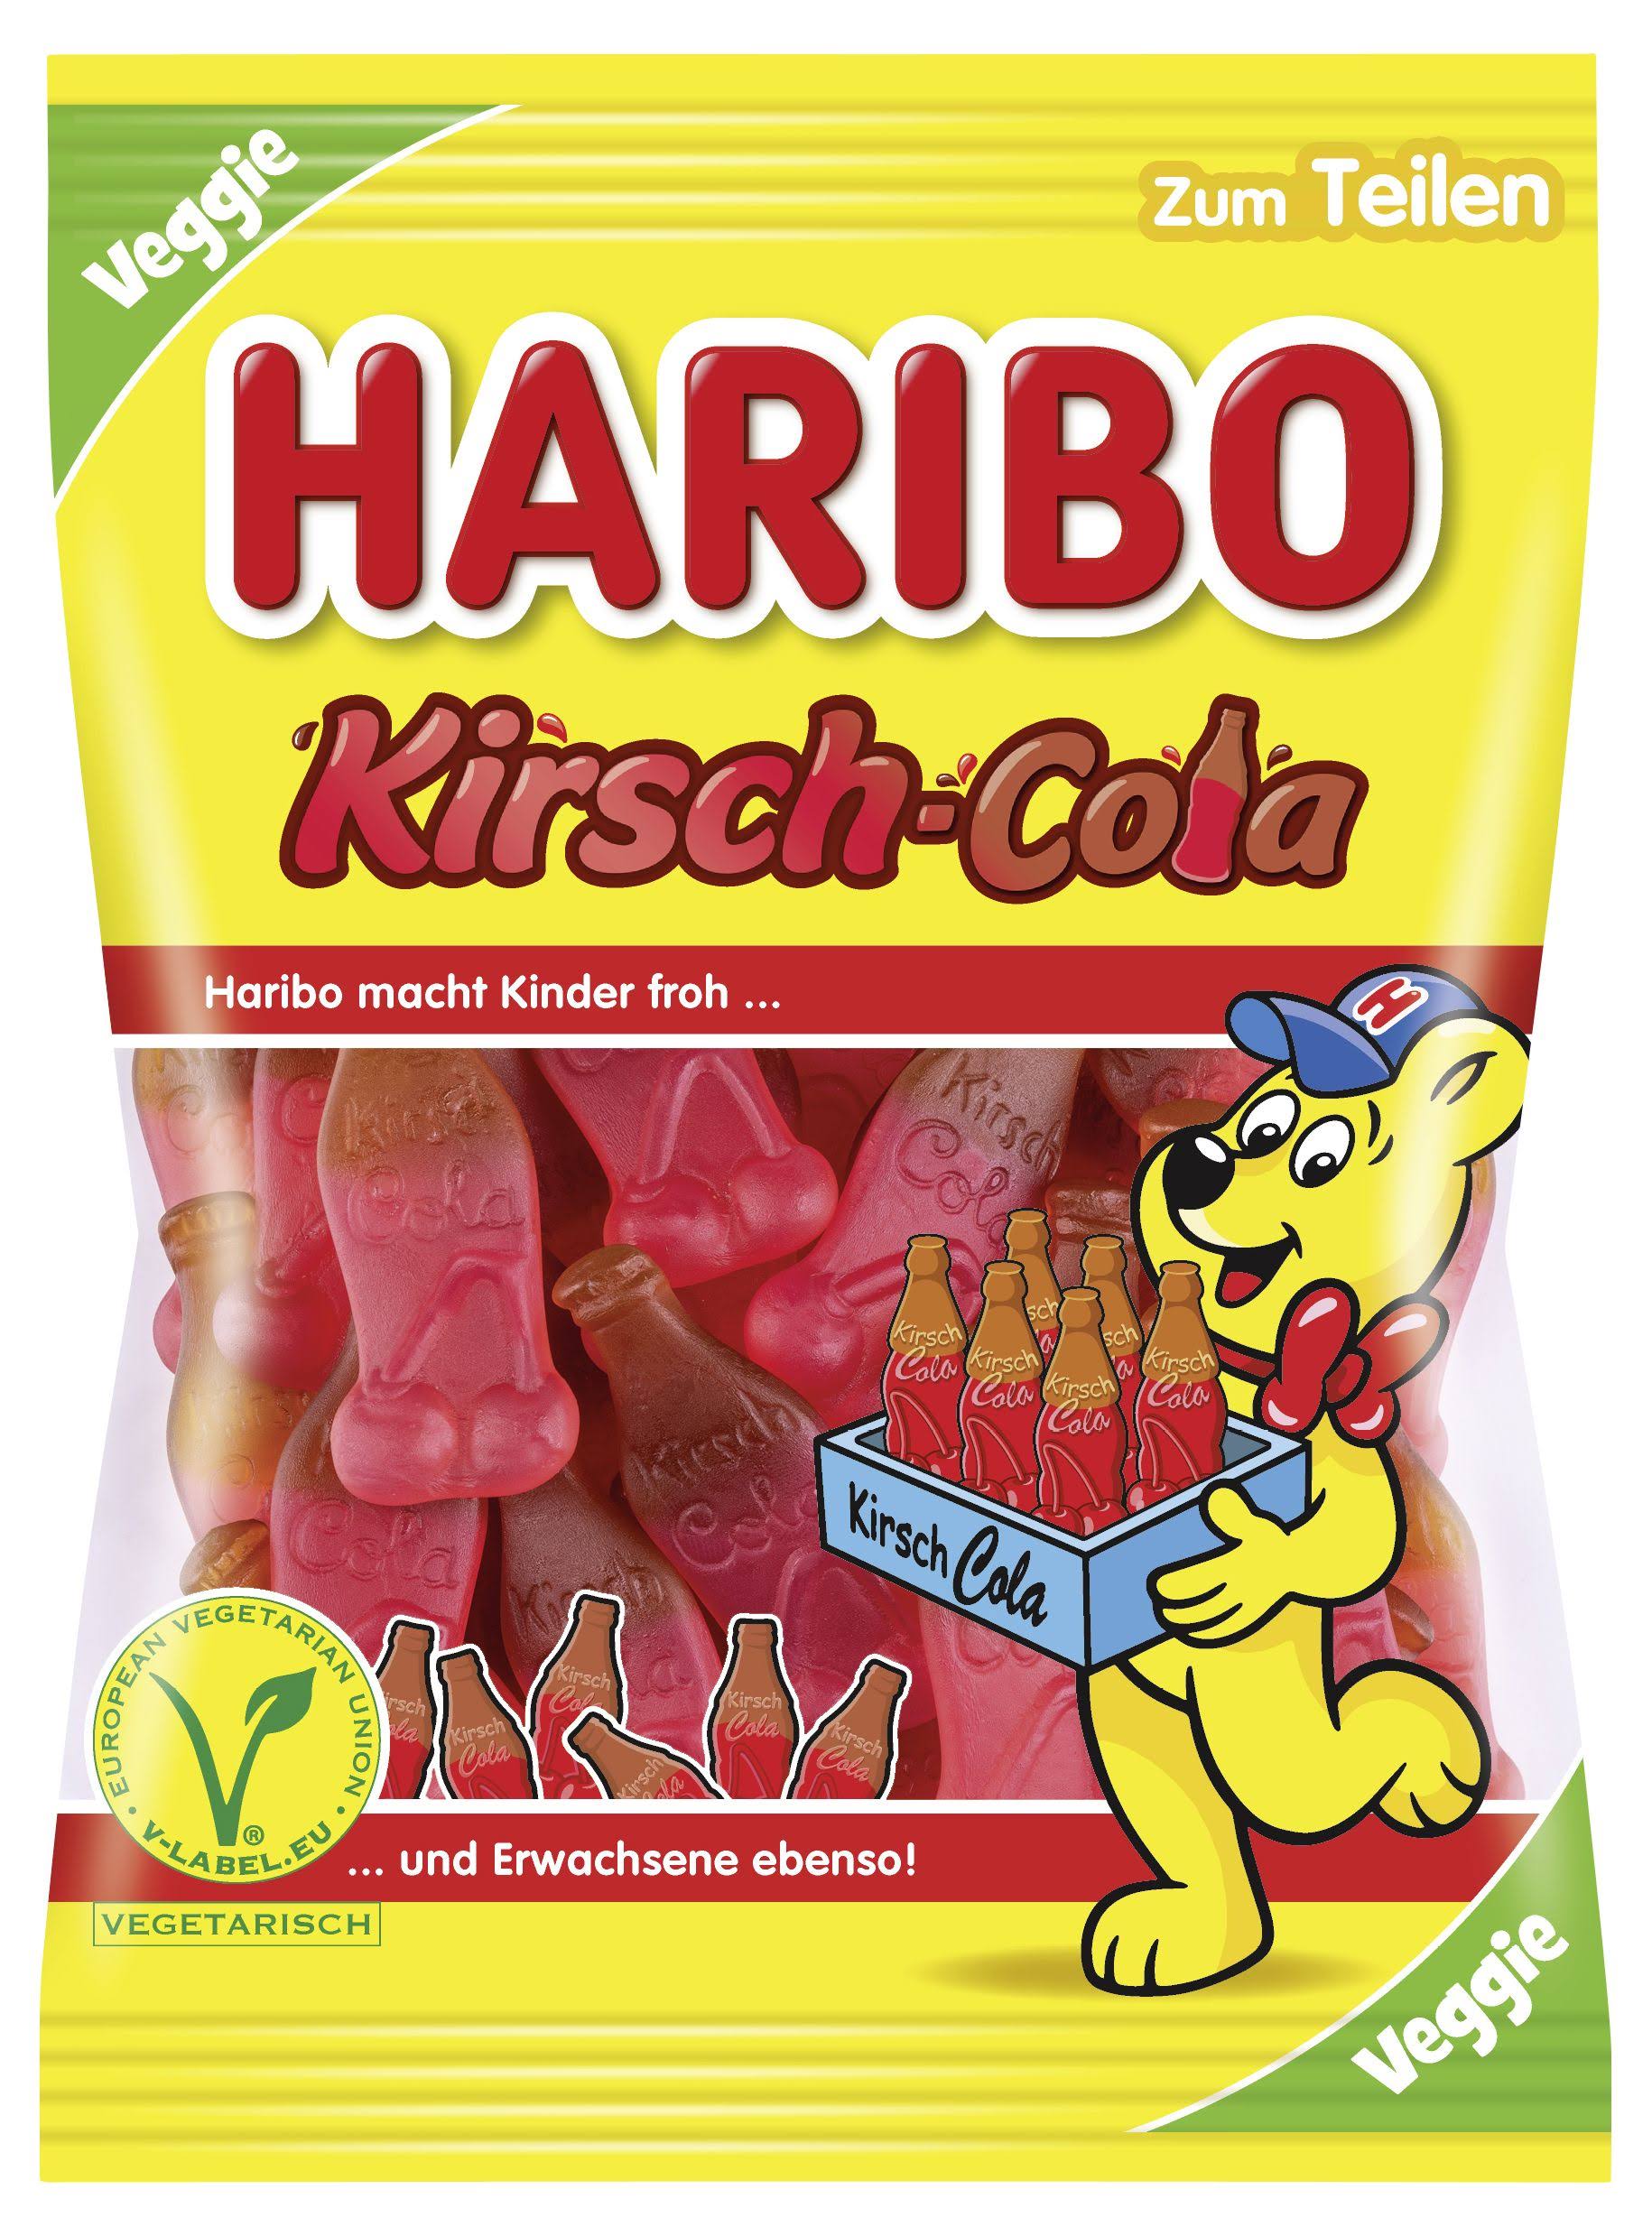 Haribo Cherry Cola Fruit Gum Bottles (200g)